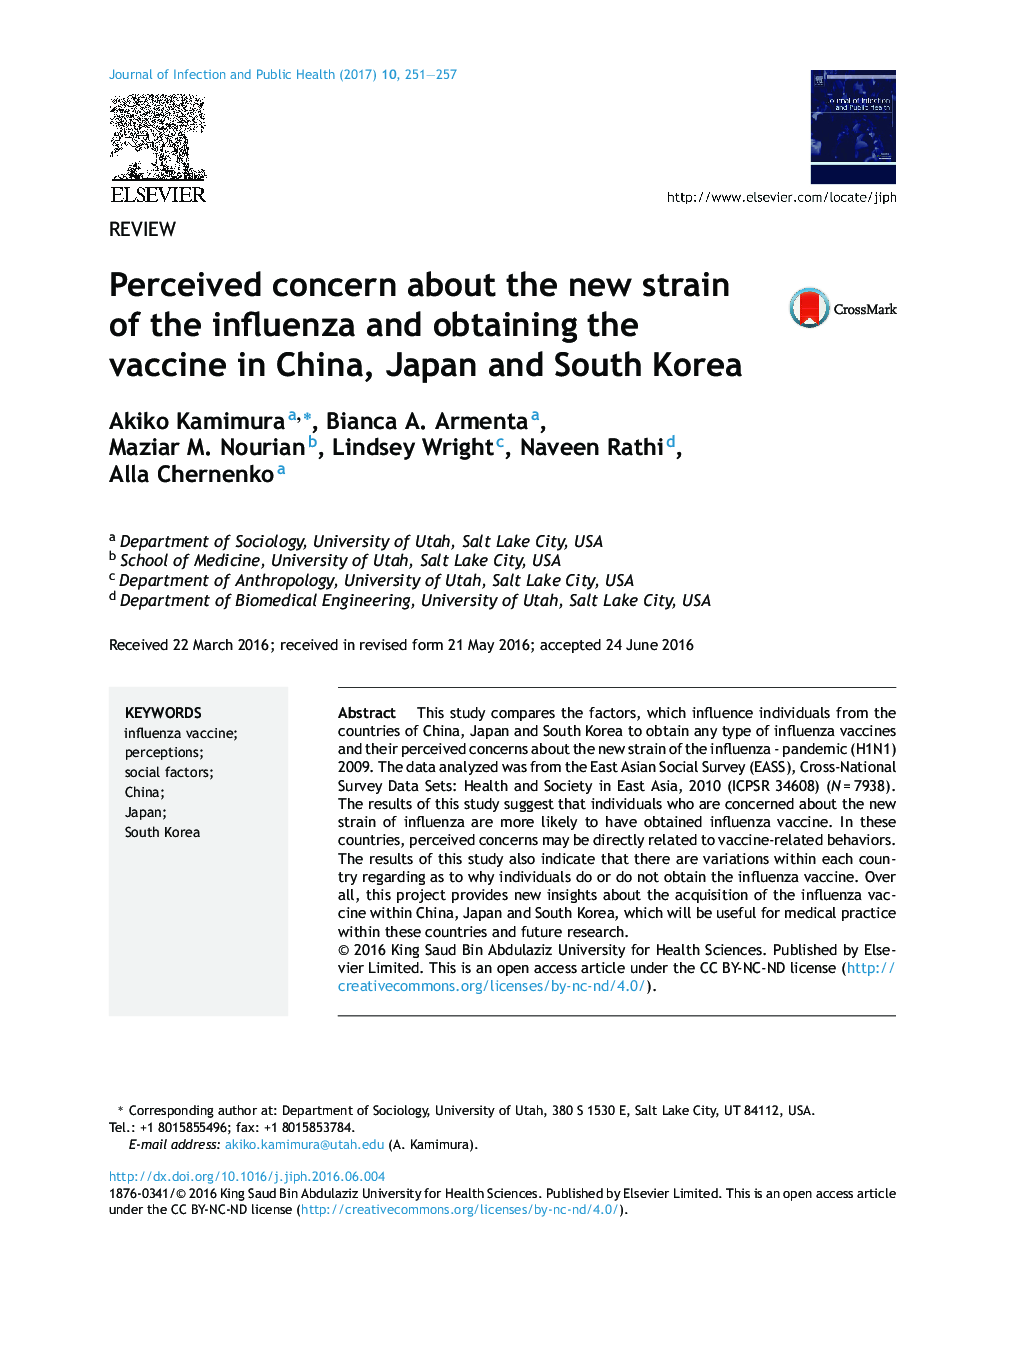 نگرانی در مورد سویه جدید آنفلوآنزا و دریافت واکسن در چین، ژاپن و کره جنوبی را درک کرده است 